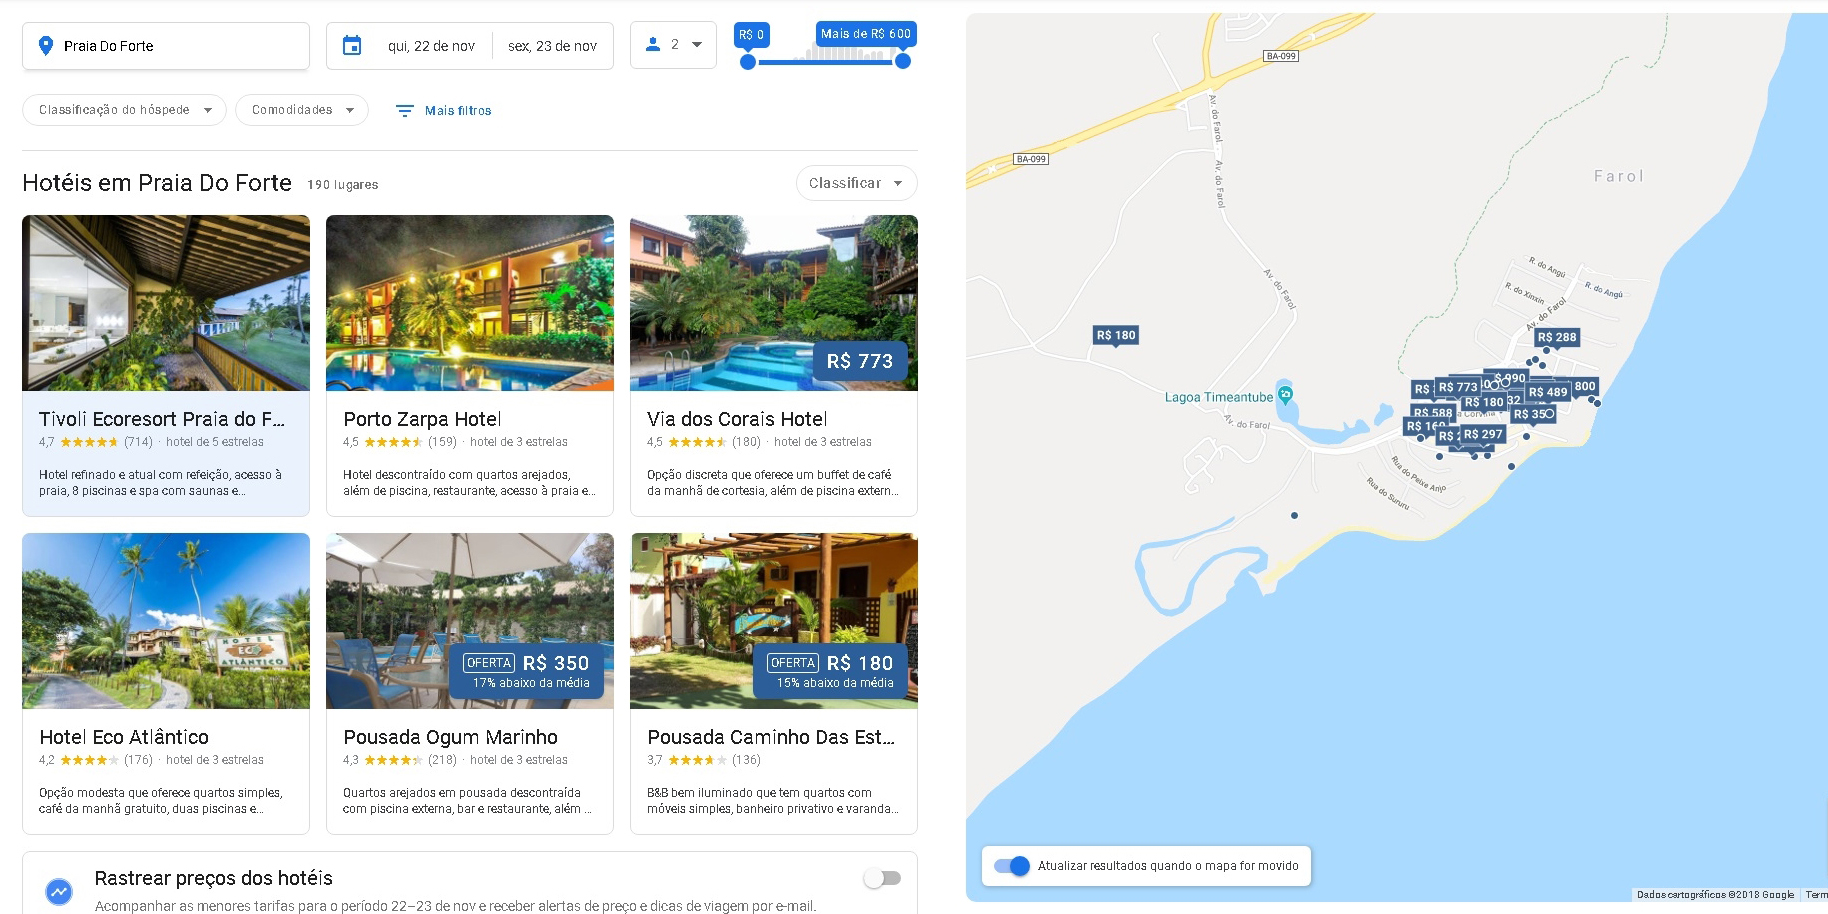 marketing digital para hotéis pesquisa google 2